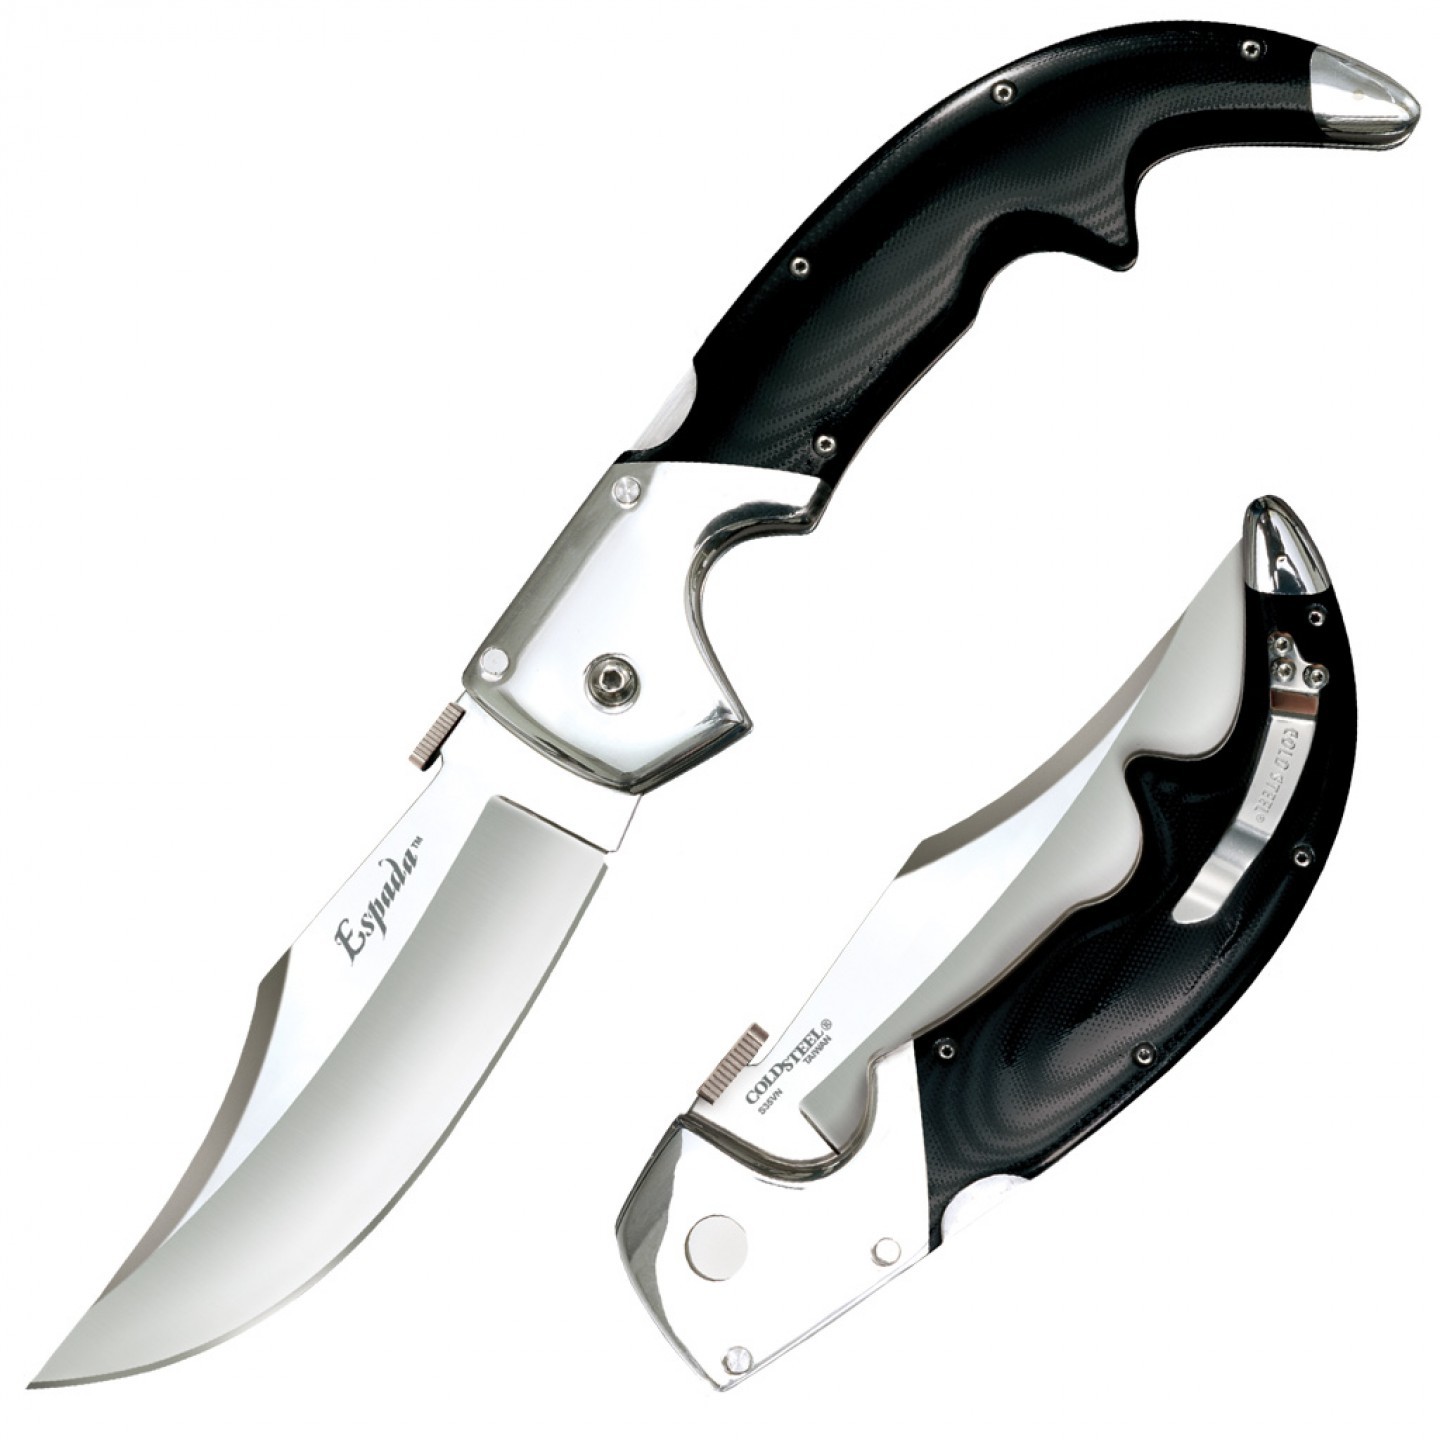 Складной нож Espada (Large) - Cold Steel 62MB, сталь CPM-S35VN, рукоять G10/Анодированный алюминий